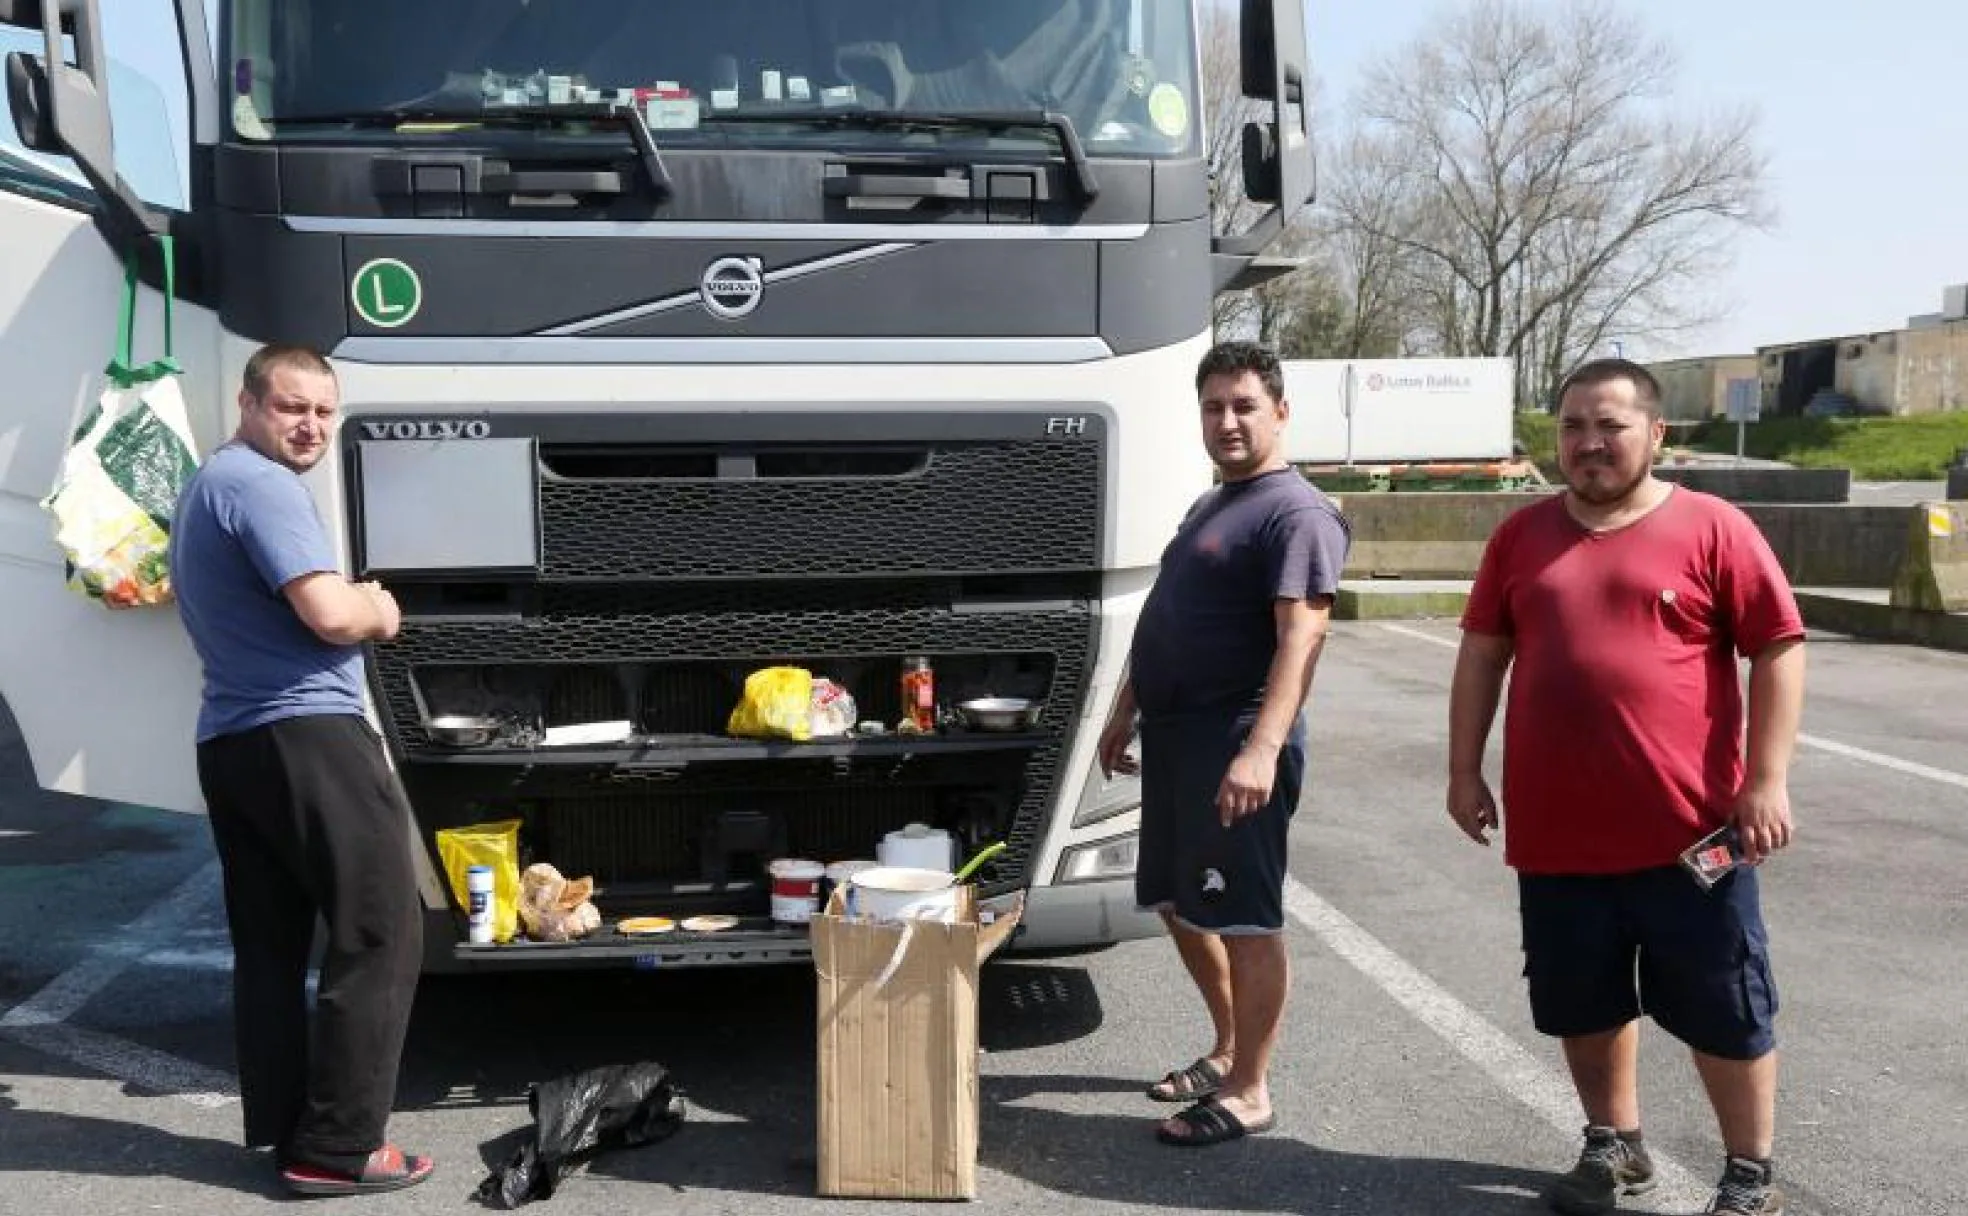 Horatio, Atino y Abderraman, tres camioneros rumanos, preparan delante del camión del primero un guiso de «fasole» típico de su país